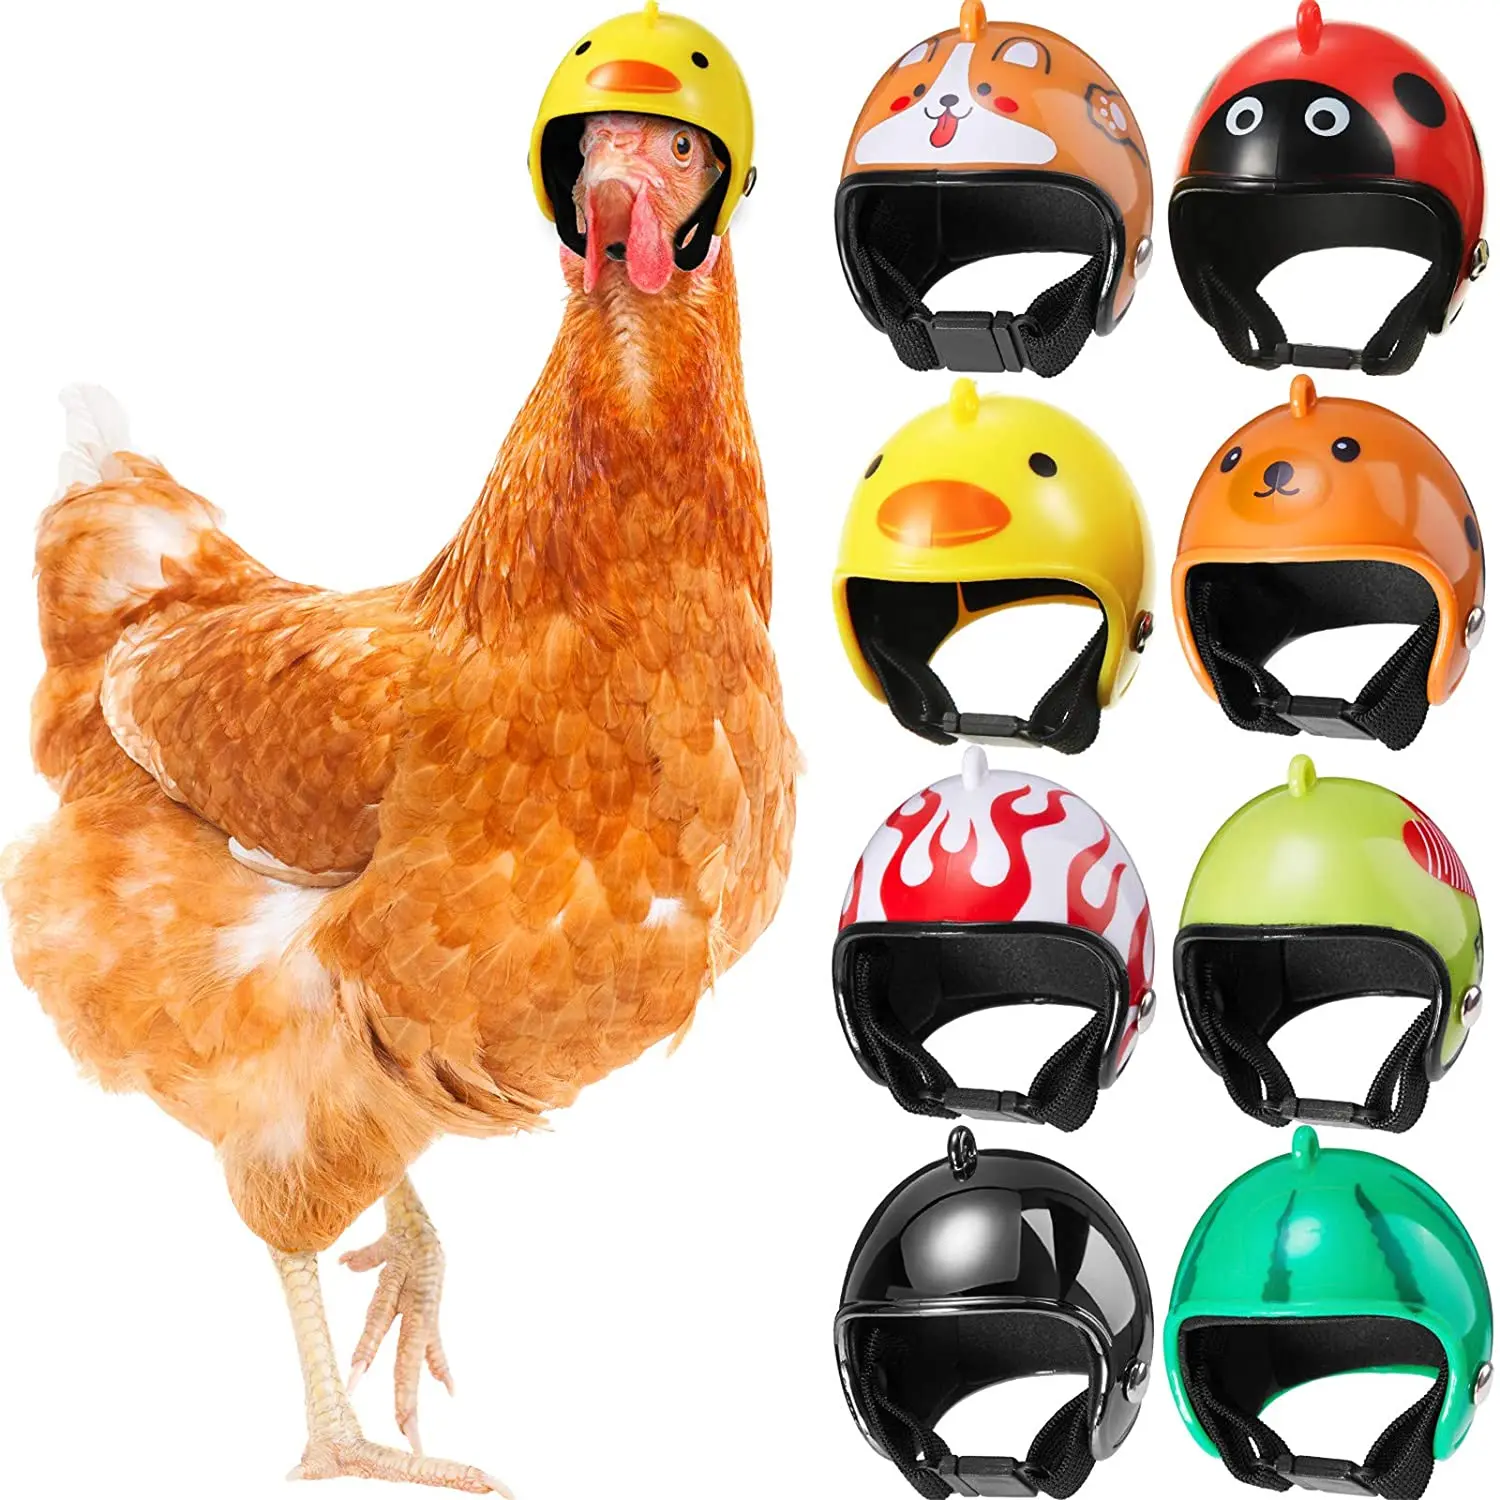 Pet Huhn Helm Nette Lustige Sicherheit Helm um den Kopf zu Schützen Kleine Geflügel Geeignet für Entlein Papageien Hühner